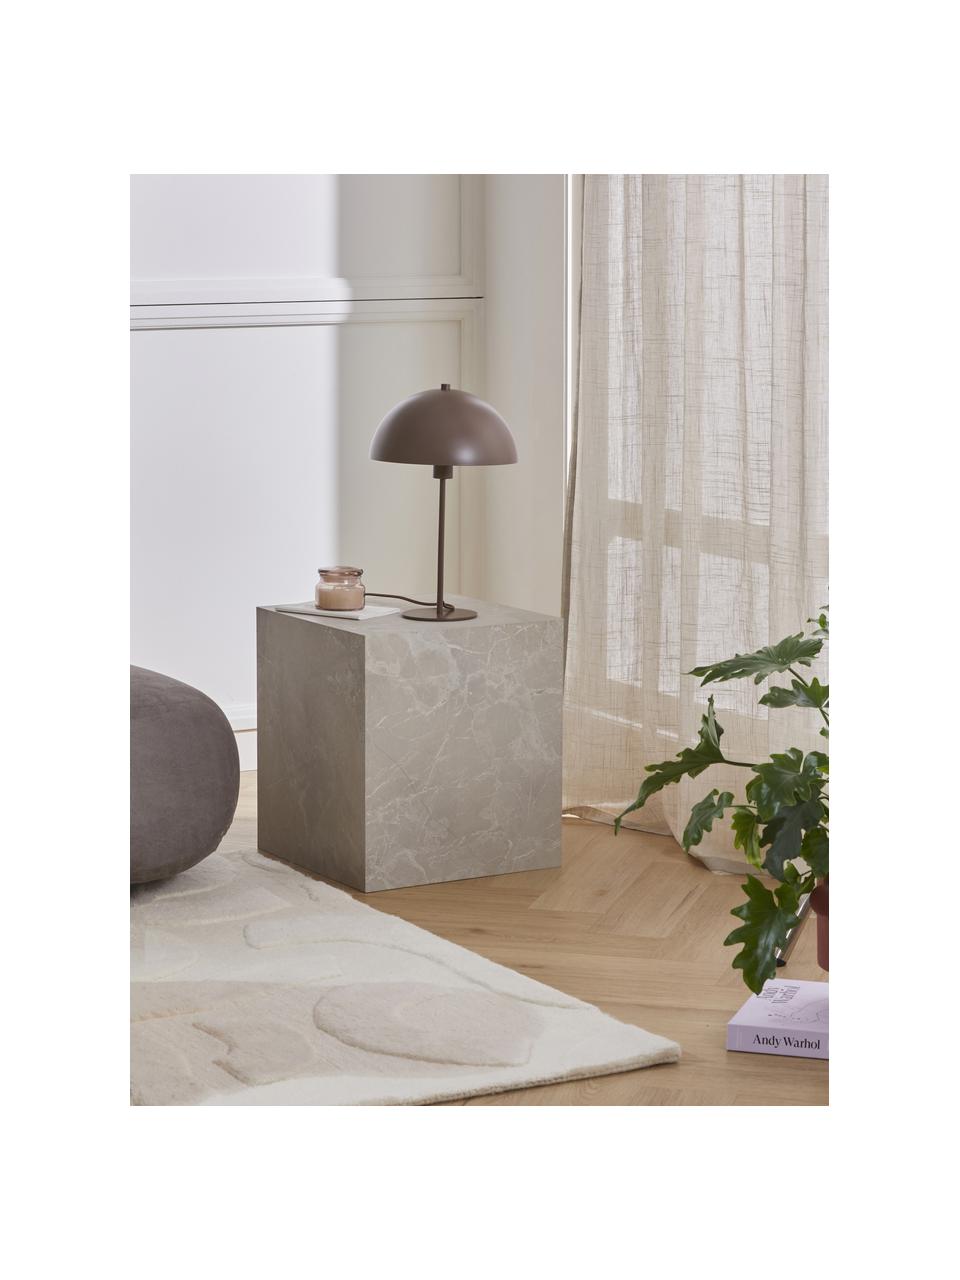 Lámpara de mesa Matilda, Pantalla: metal con pintura en polv, Cable: cubierto en tela, Turrón, Ø 29 x Al 45 cm